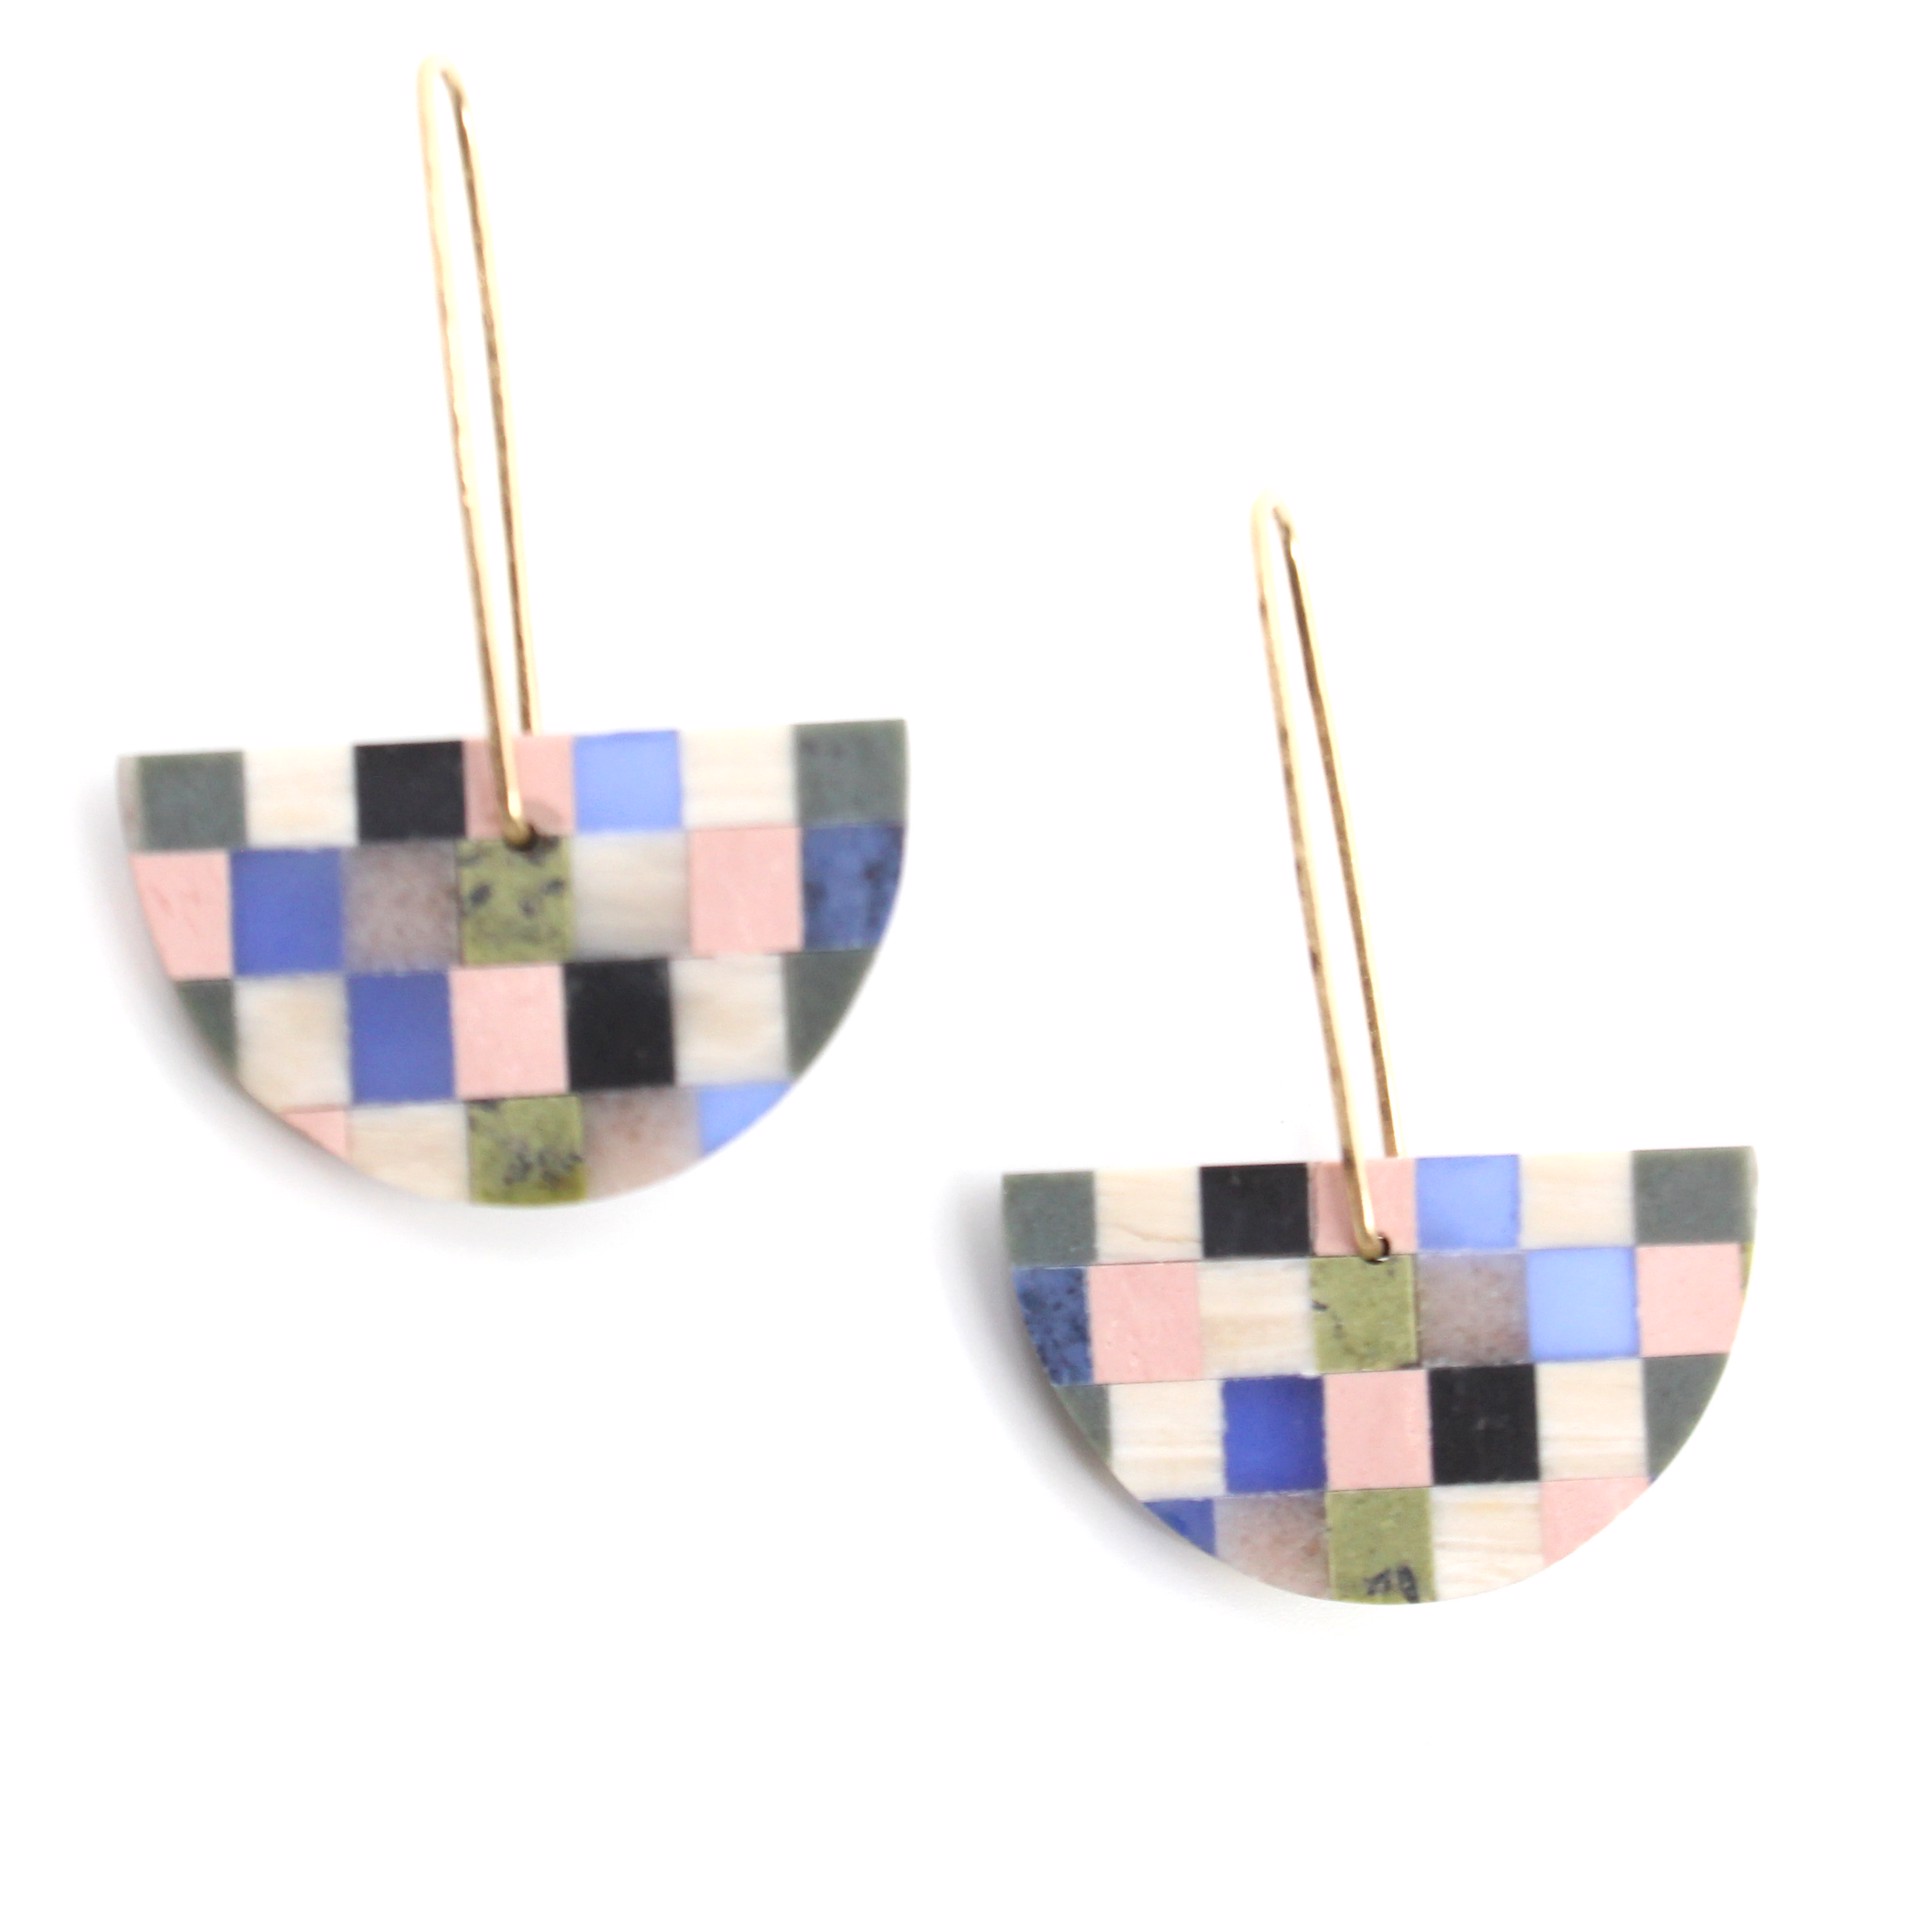 Multi-Stone Earrings by Alison Jean Cole